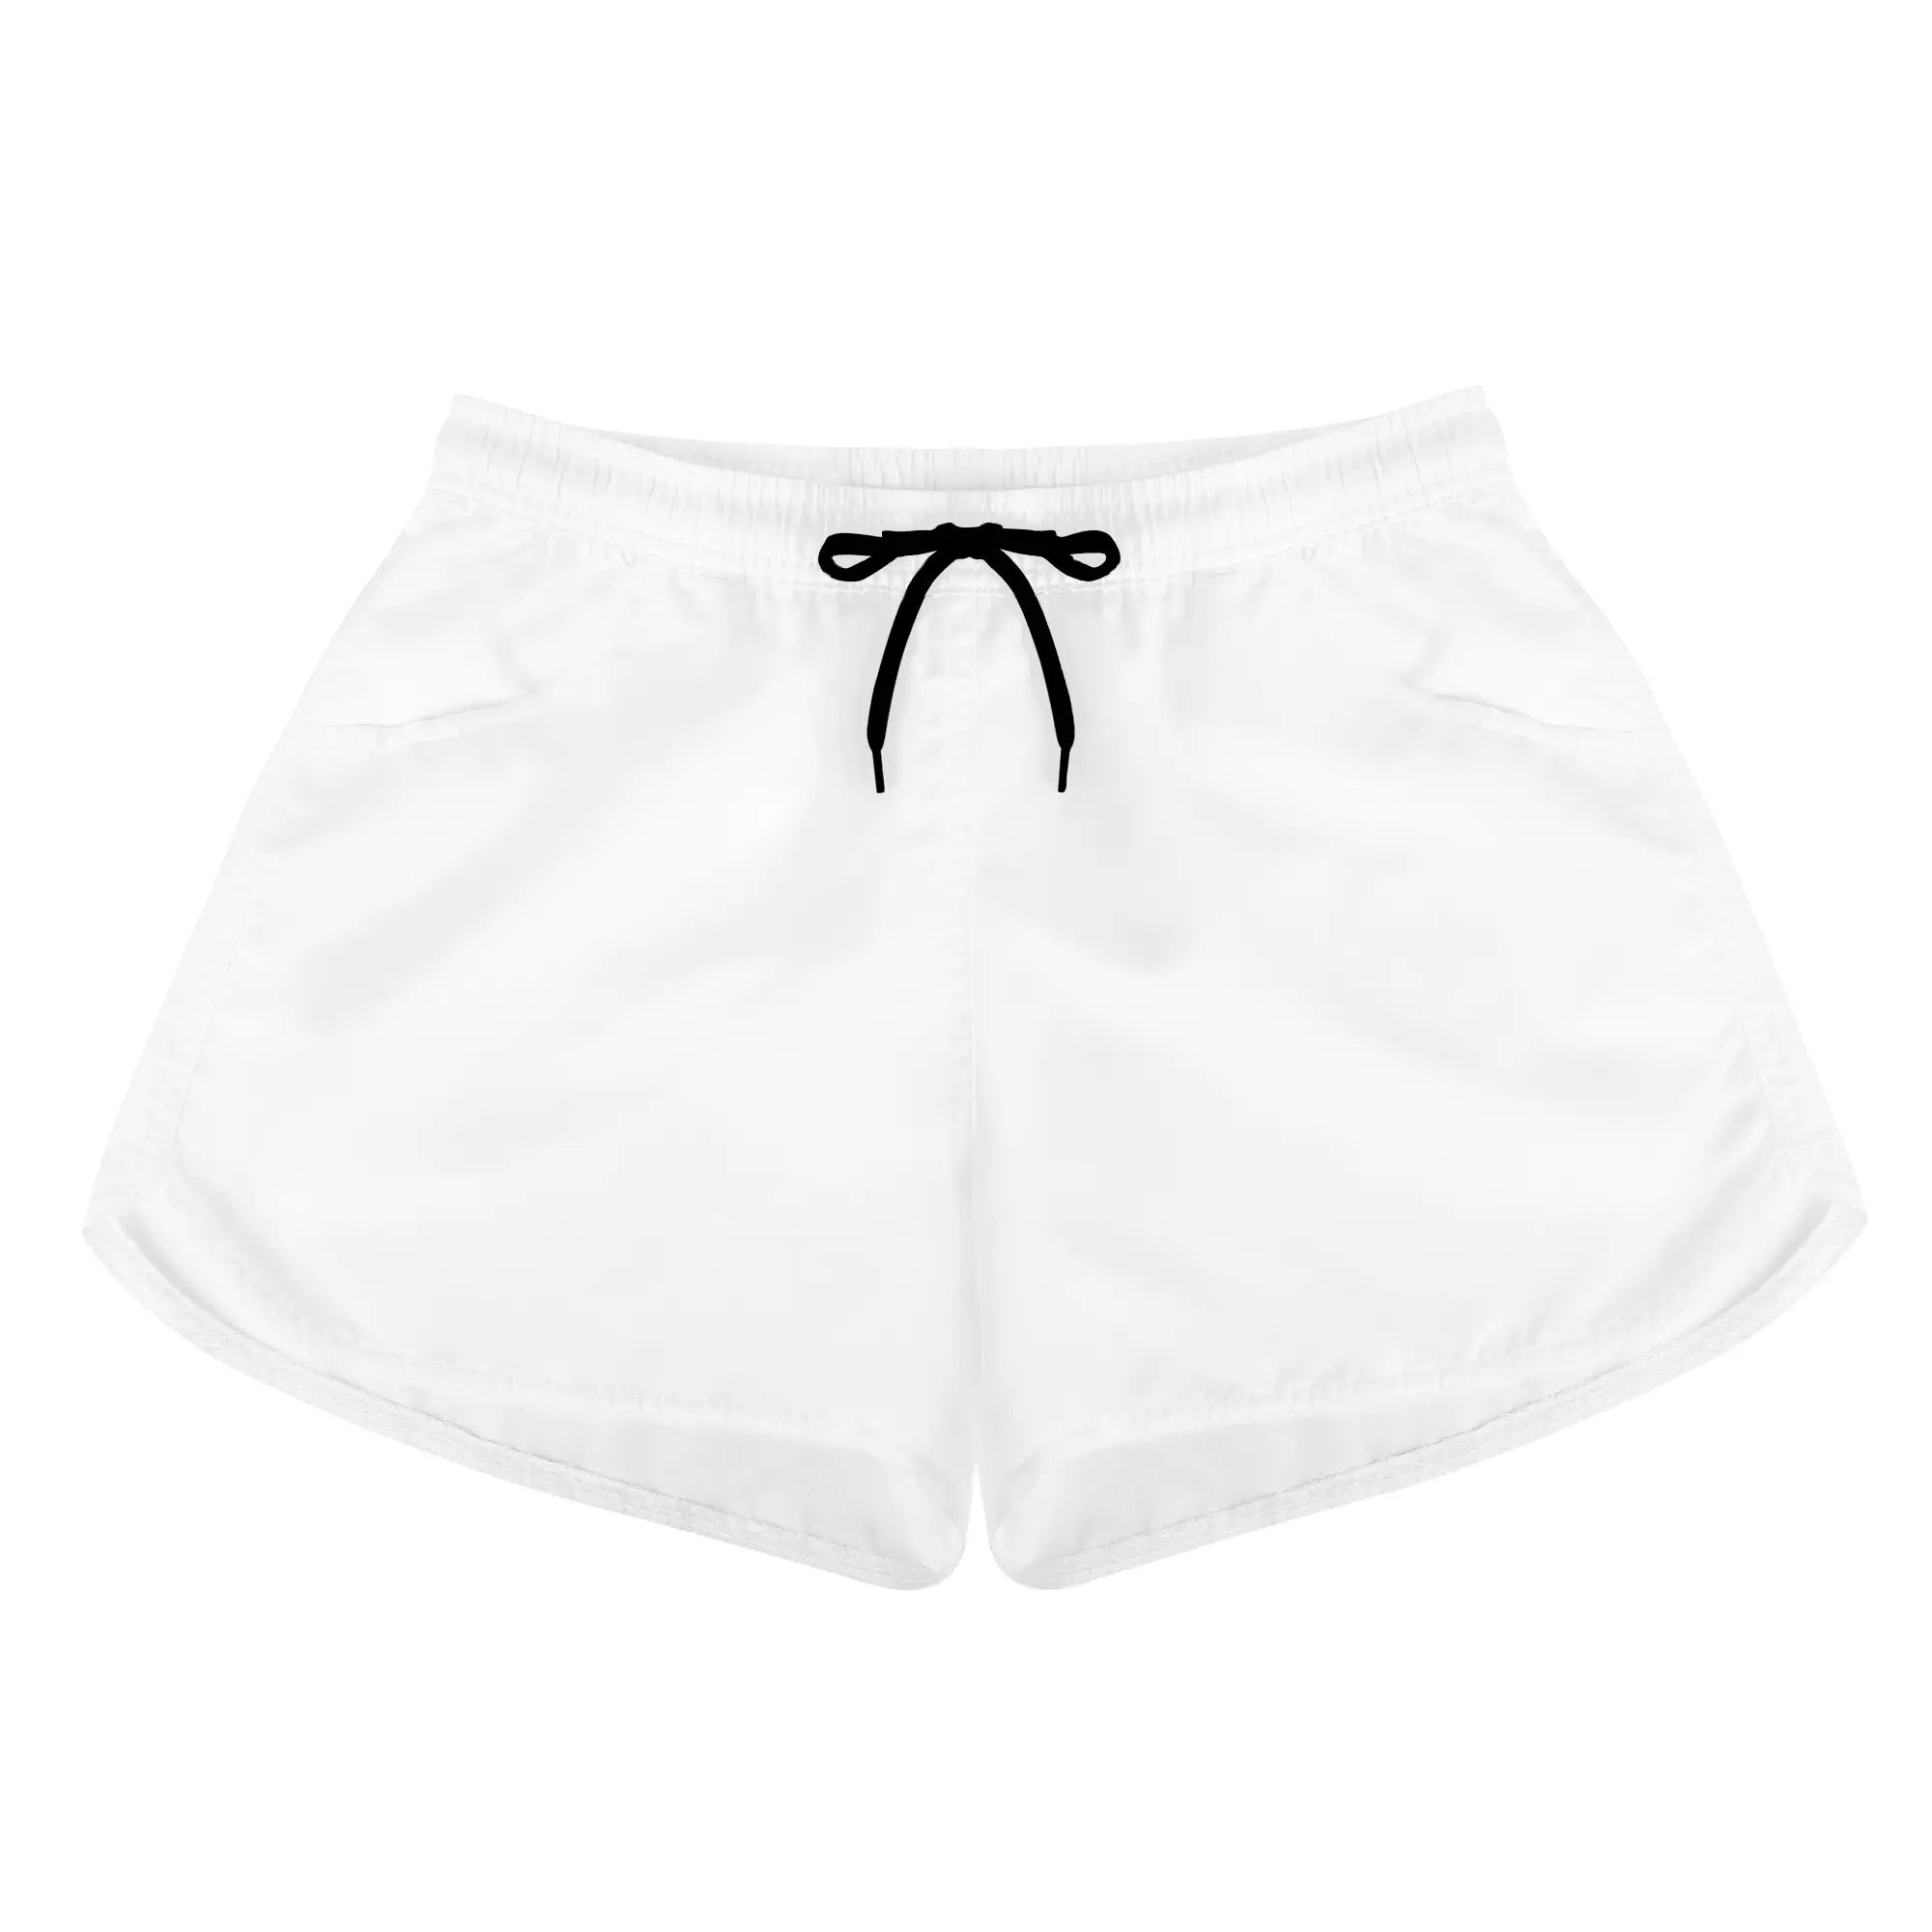 Customizable Womens Shorts | Women's All Over Print Casual Shorts by Shoe Zero - Shoe Zero